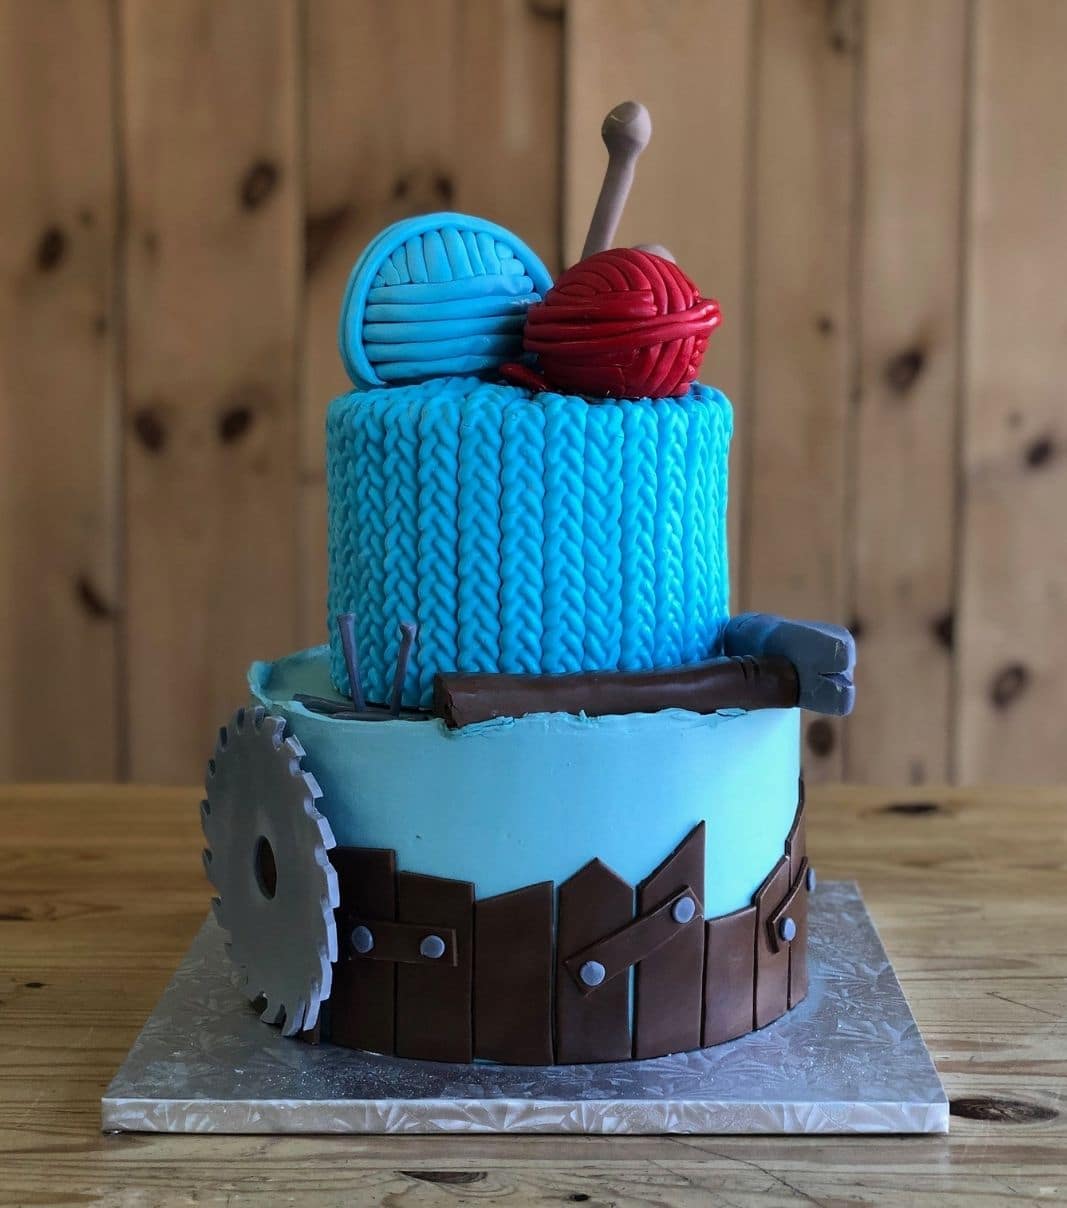 Gâteau d'anniversaire sur mesure de la même de Vincent: gâteau de 2 étages à thématique de tricot avec une couverture en fondant et décoré d'une scie ronde, d'une aiguille à tricoter et de boules de laine en fondant.